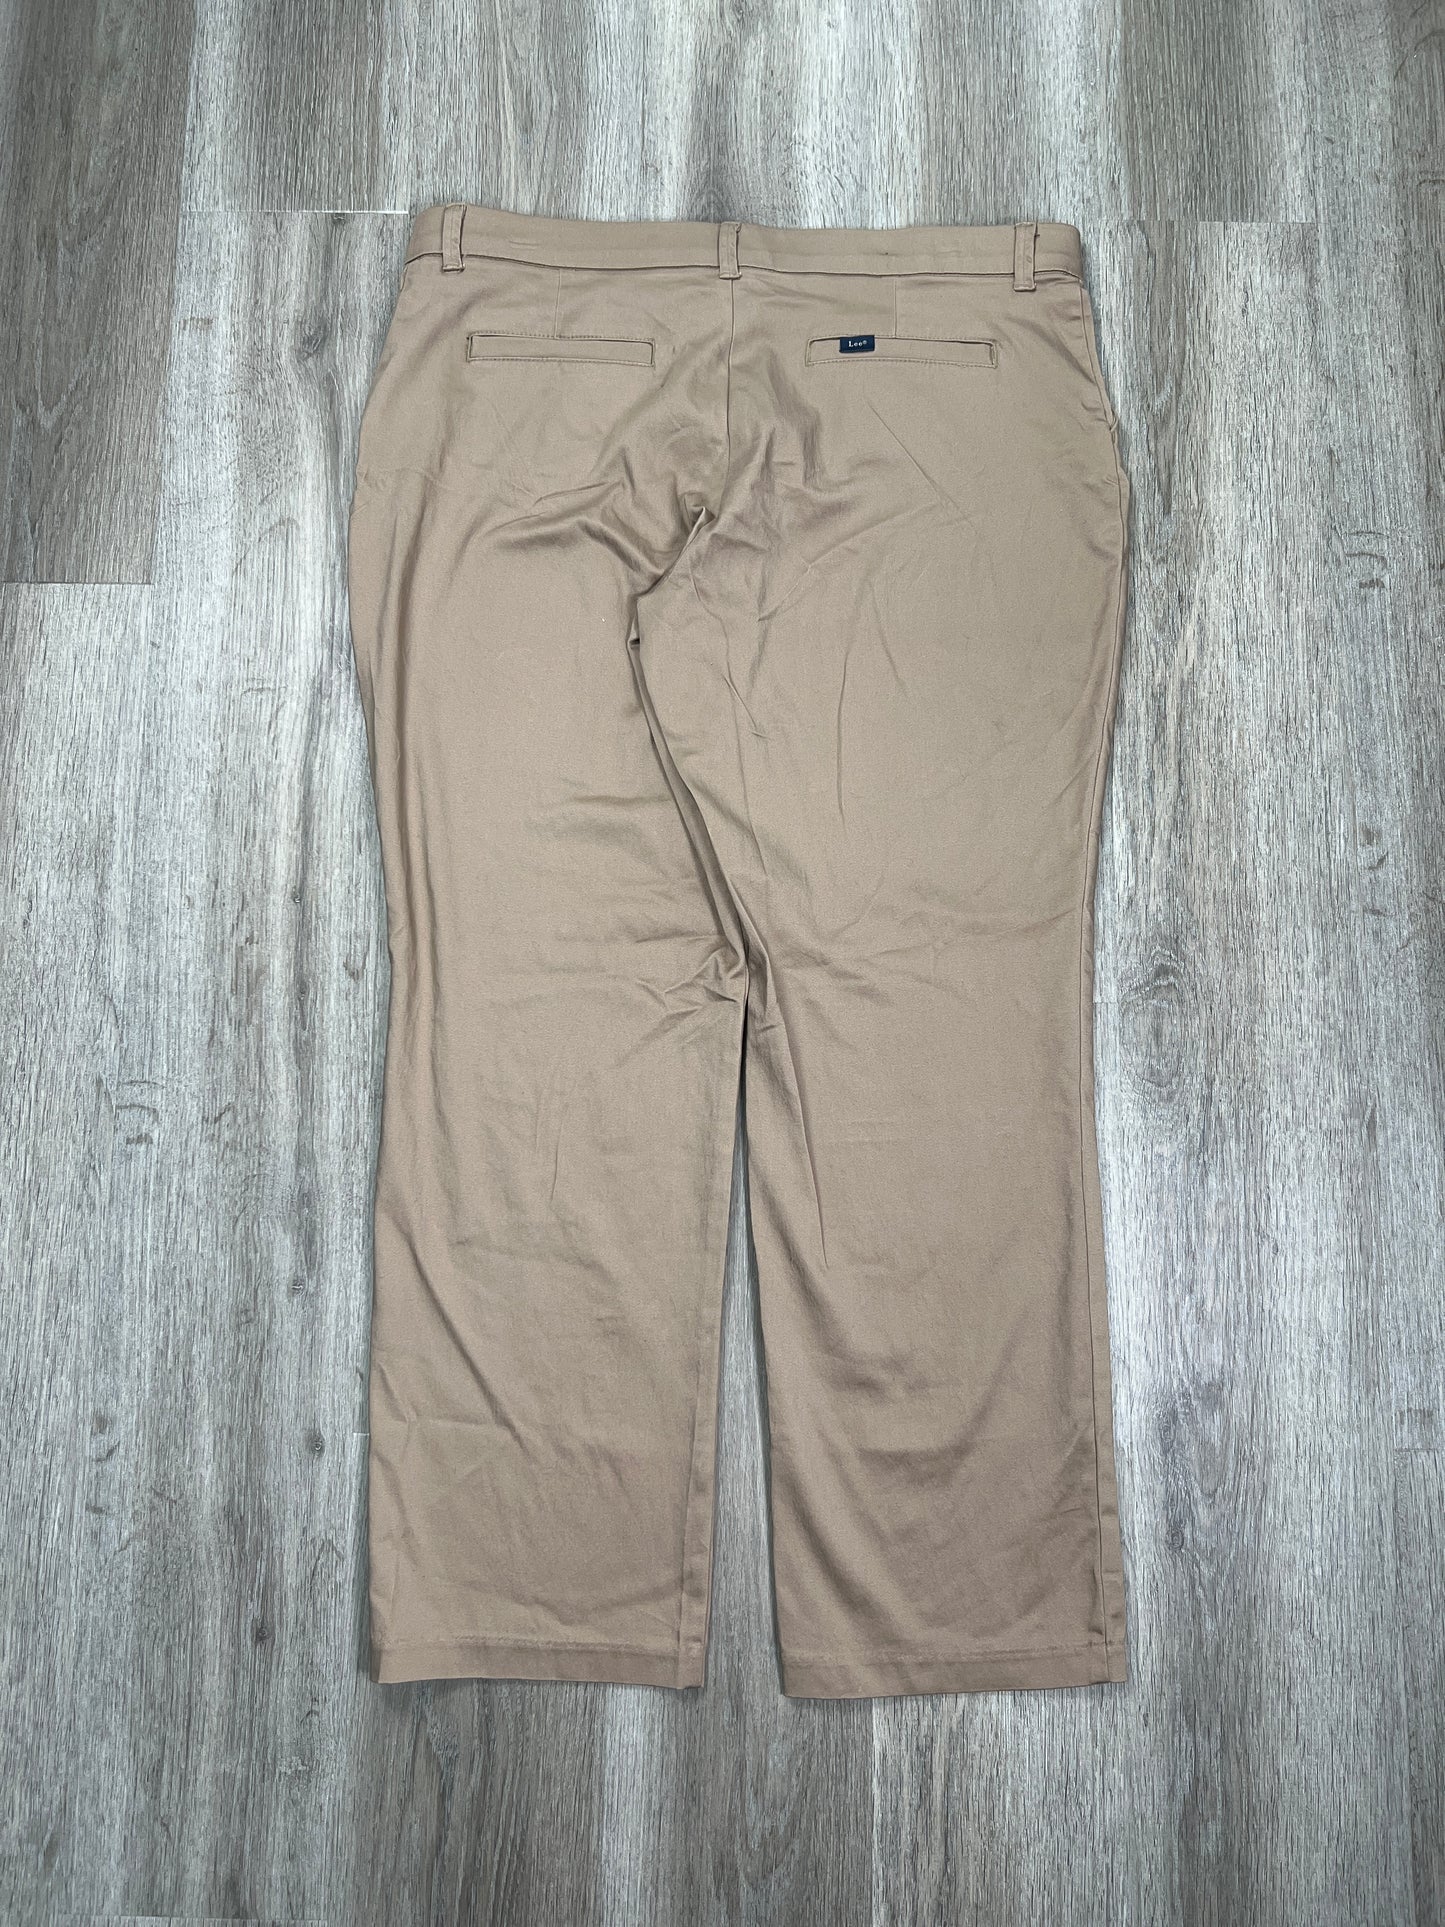 Pants Dress By Lee  Size: 2x